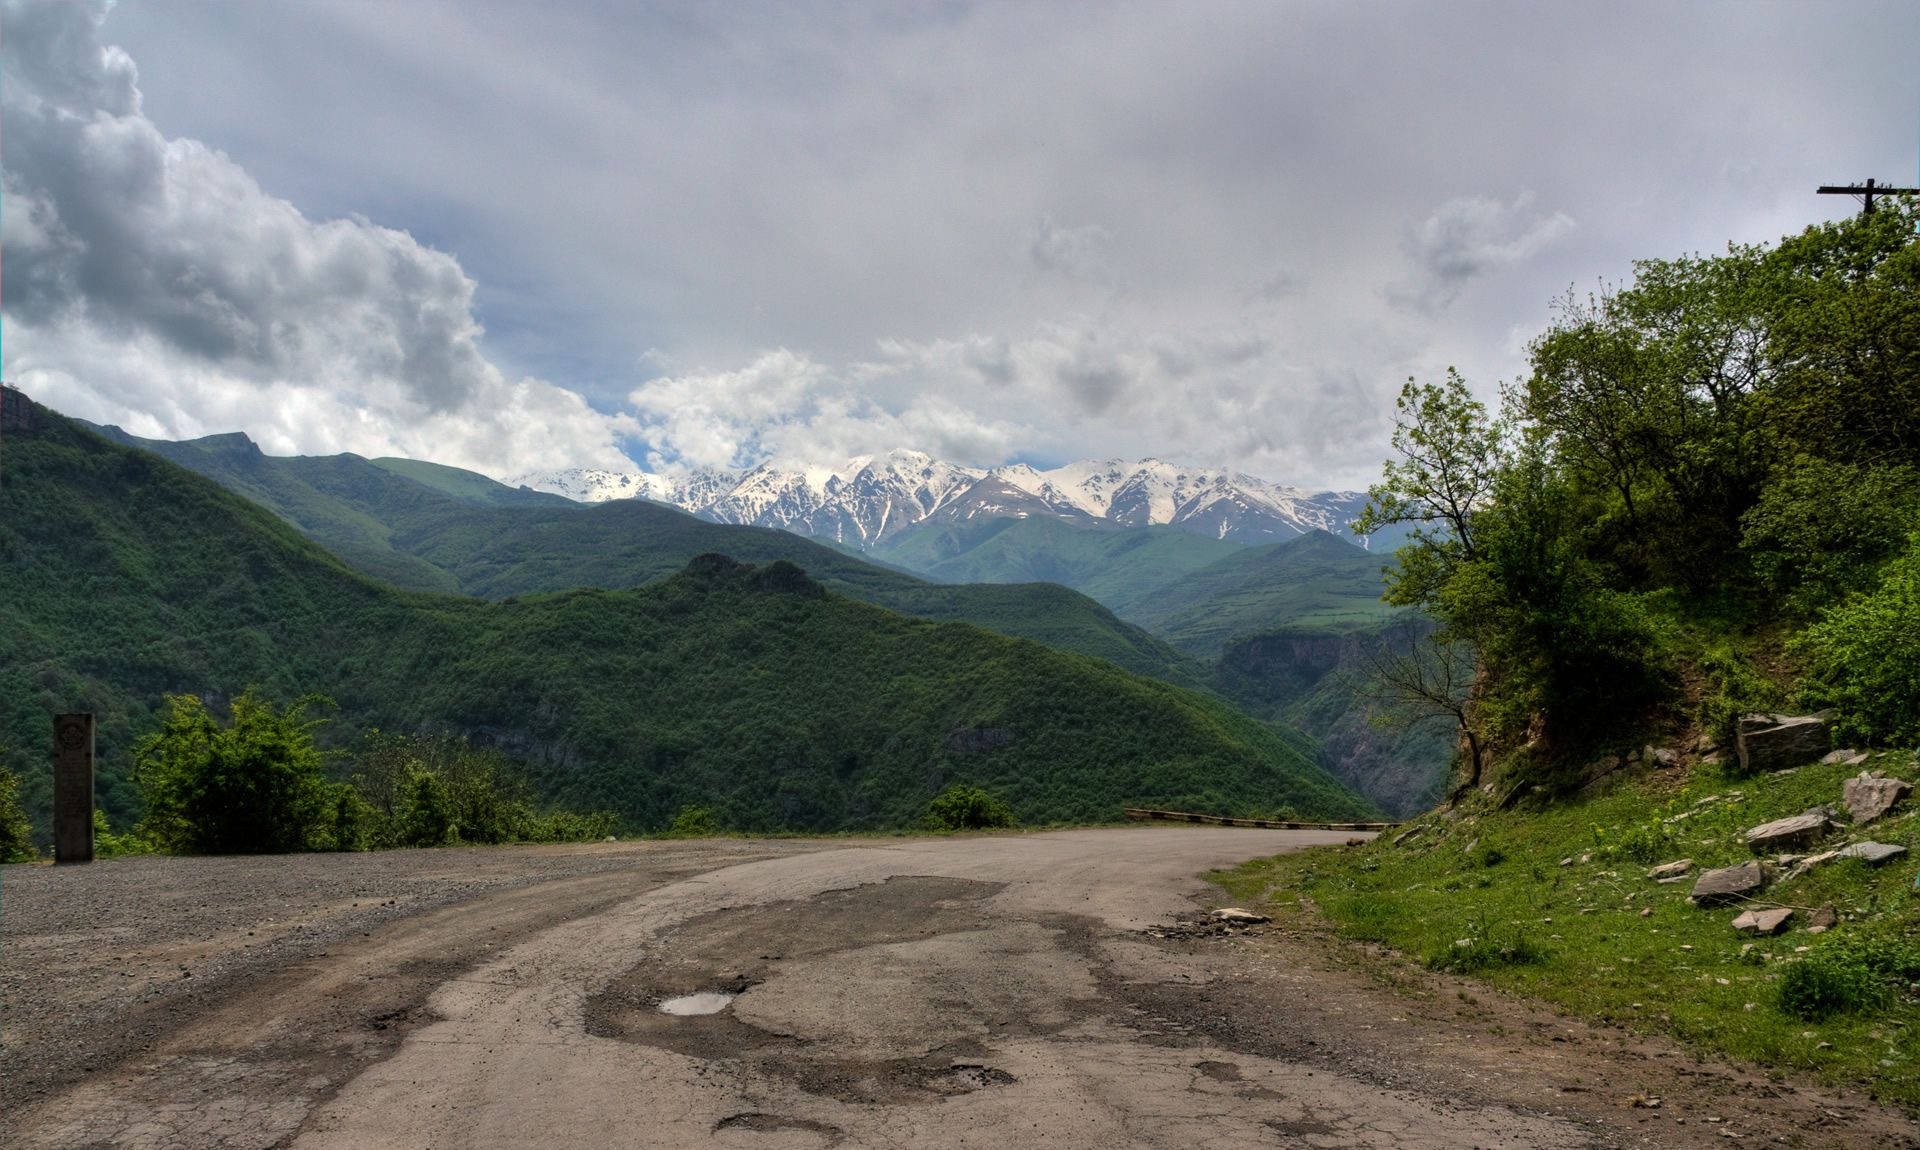 Armenien Mountain Scenery Wallpaper